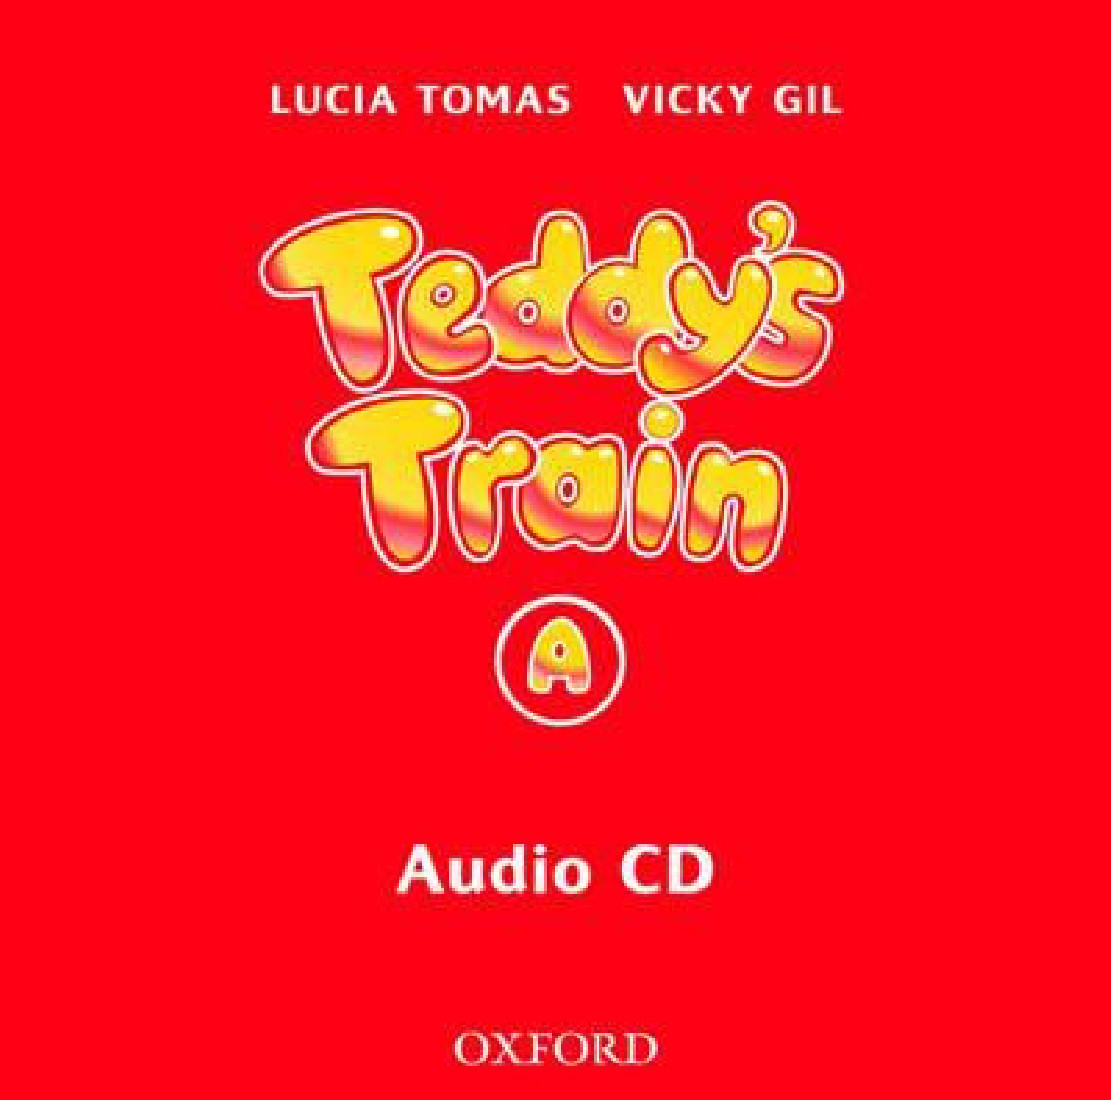 TEDDYS TRAIN A CD CLASS (1)